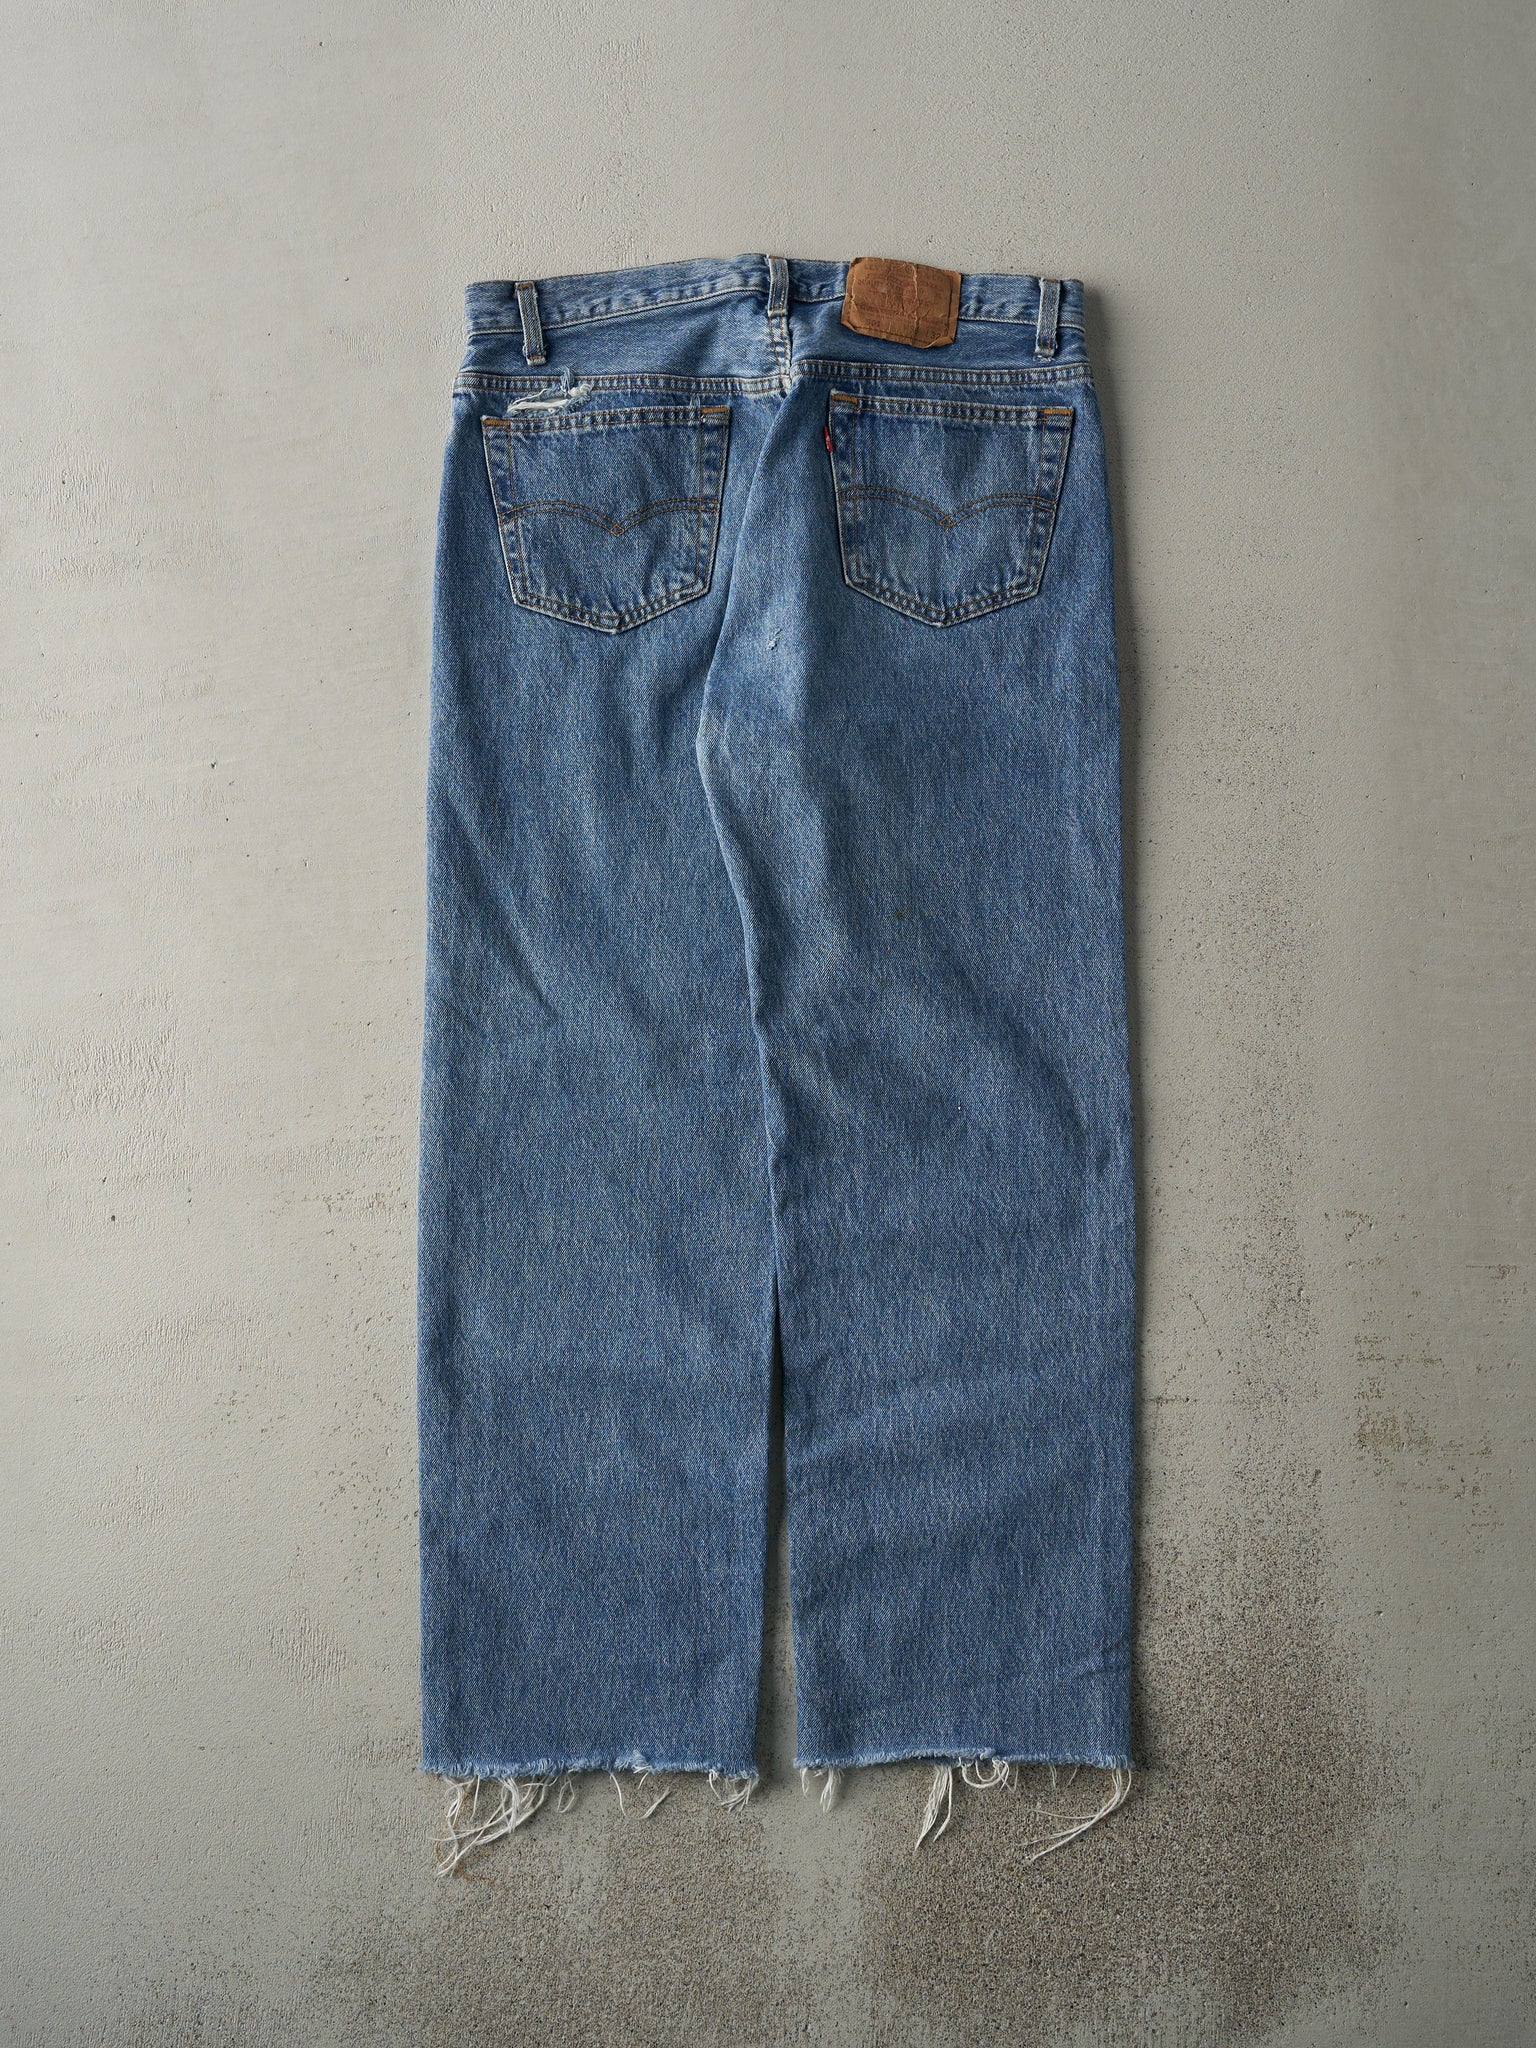 Vintage 80s Light Wash Levi's 501 Jeans (34x28)